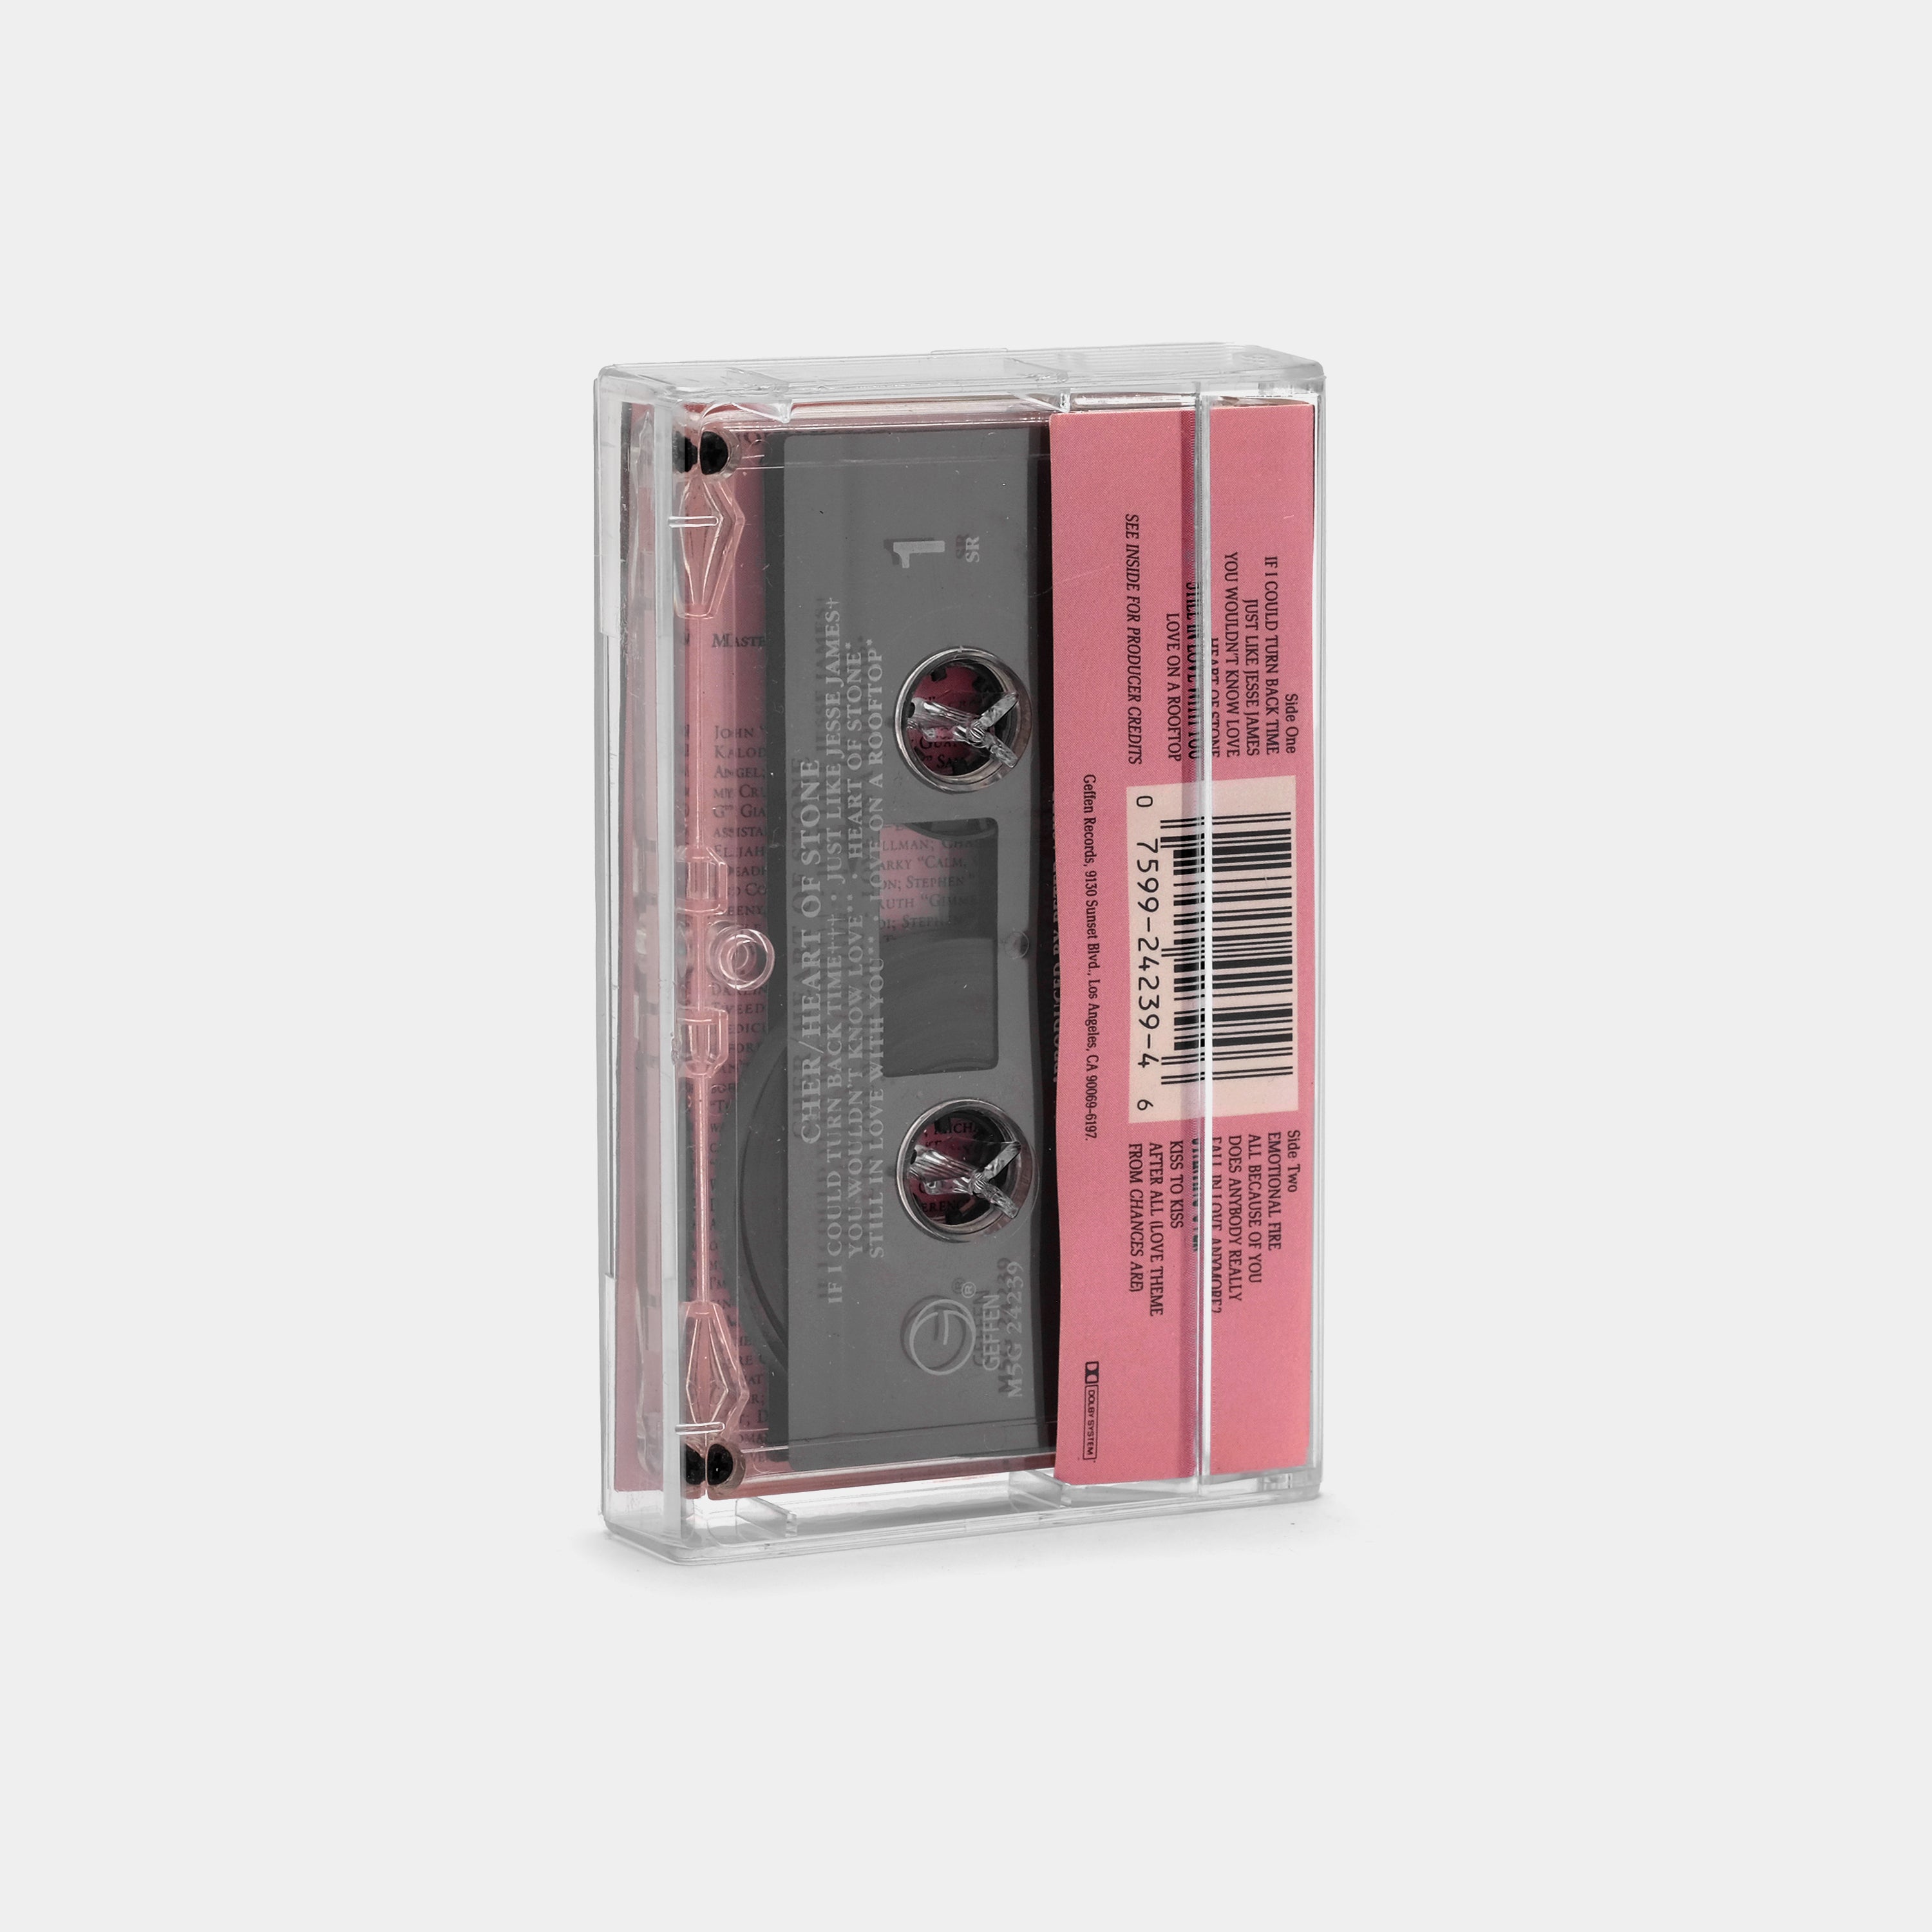 Cher - Heart Of Stone Cassette Tape